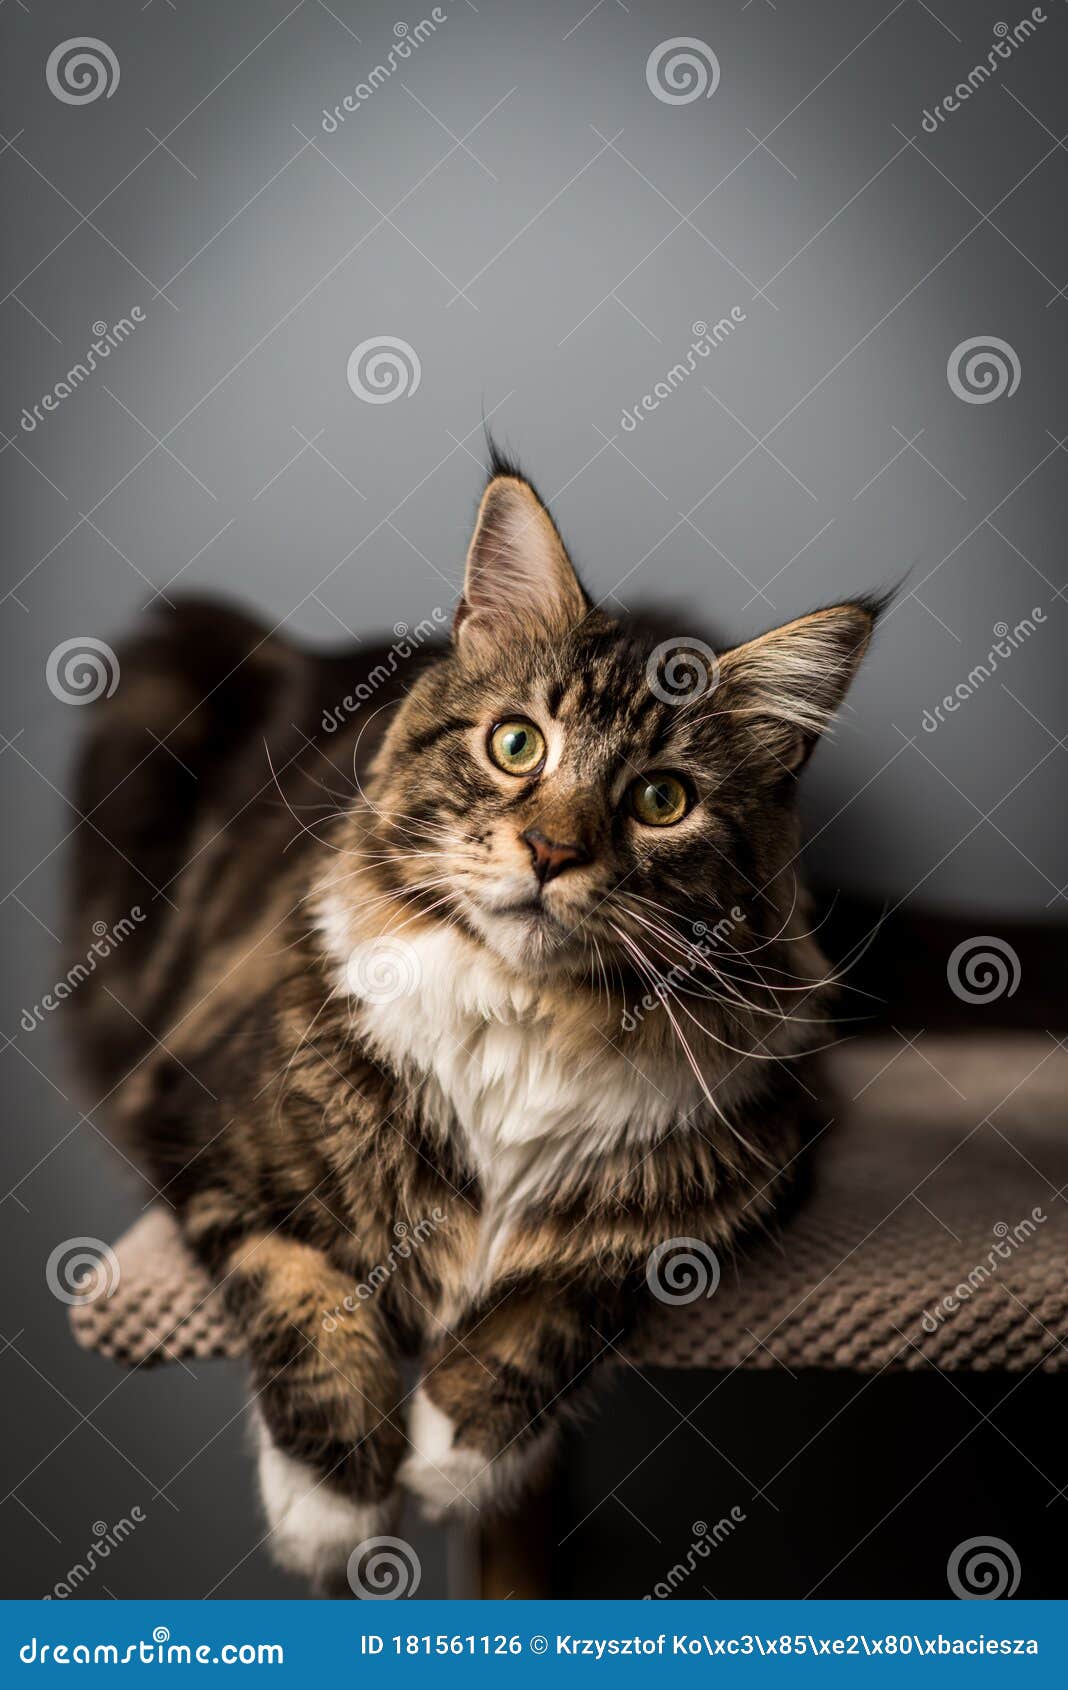 cat portrait of photo session